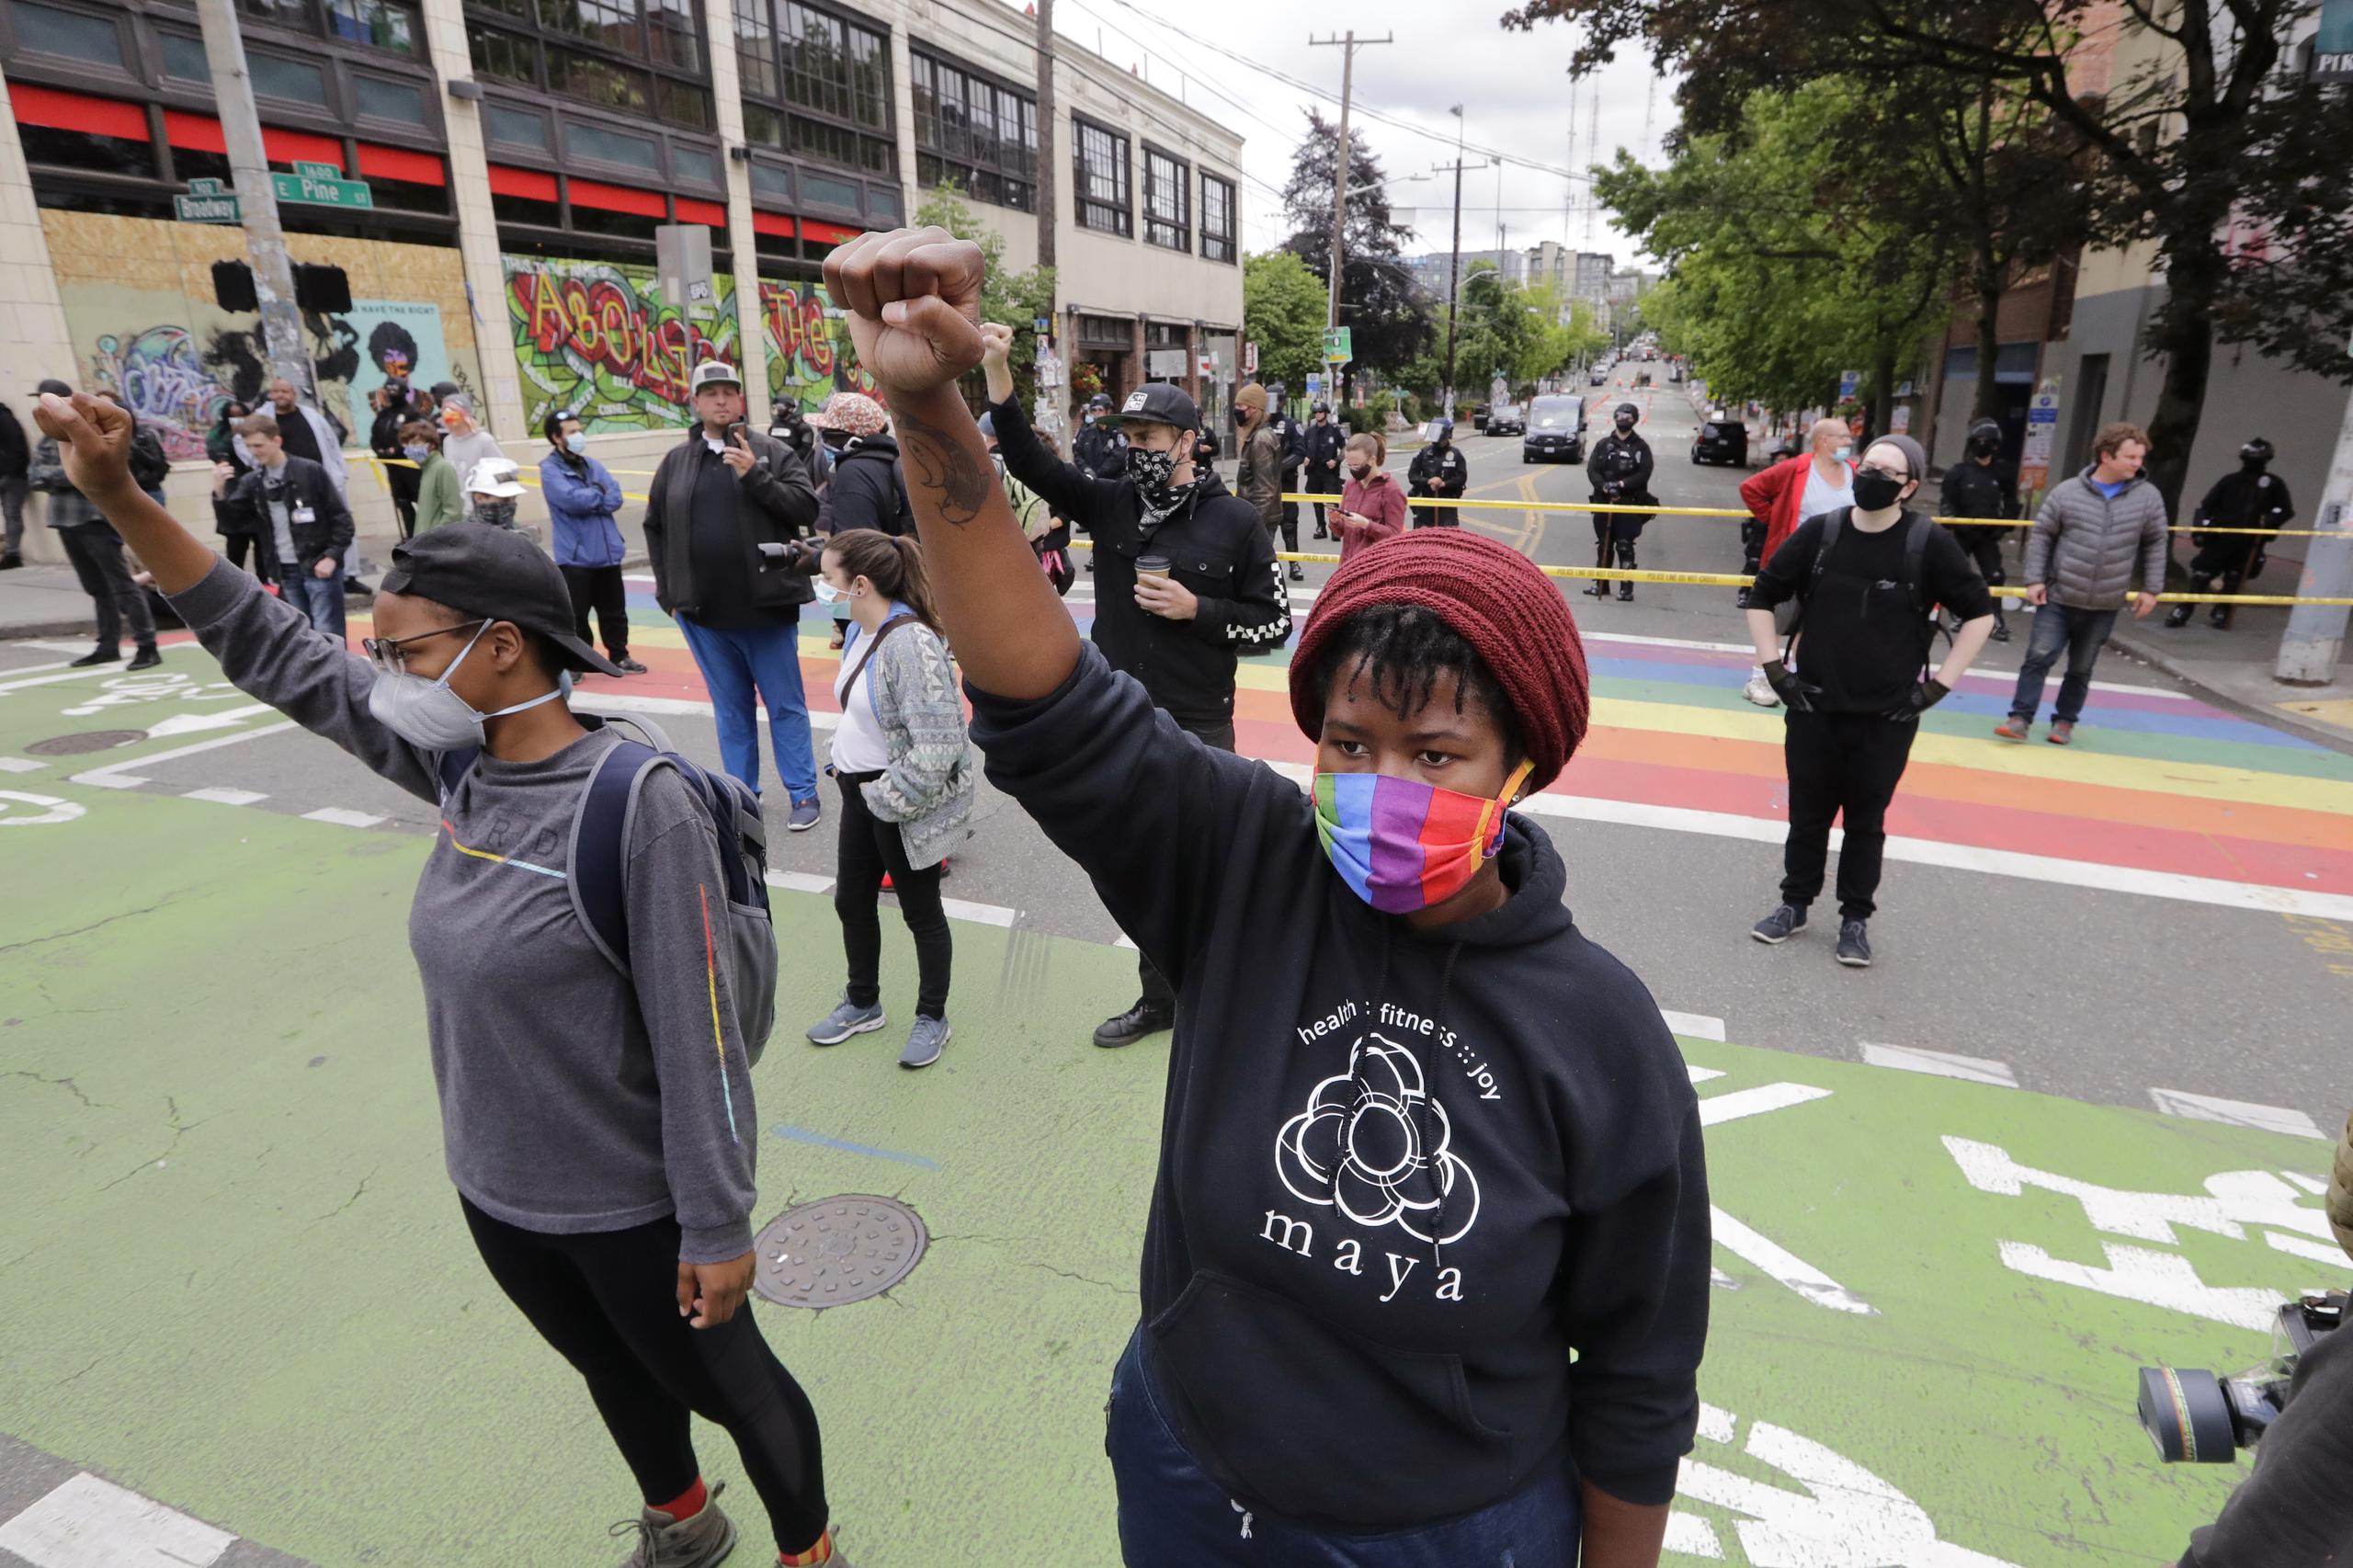 Seattle ha sido escenario de numerosas protestas desde la muerte de George Floyd a manos de la policía.